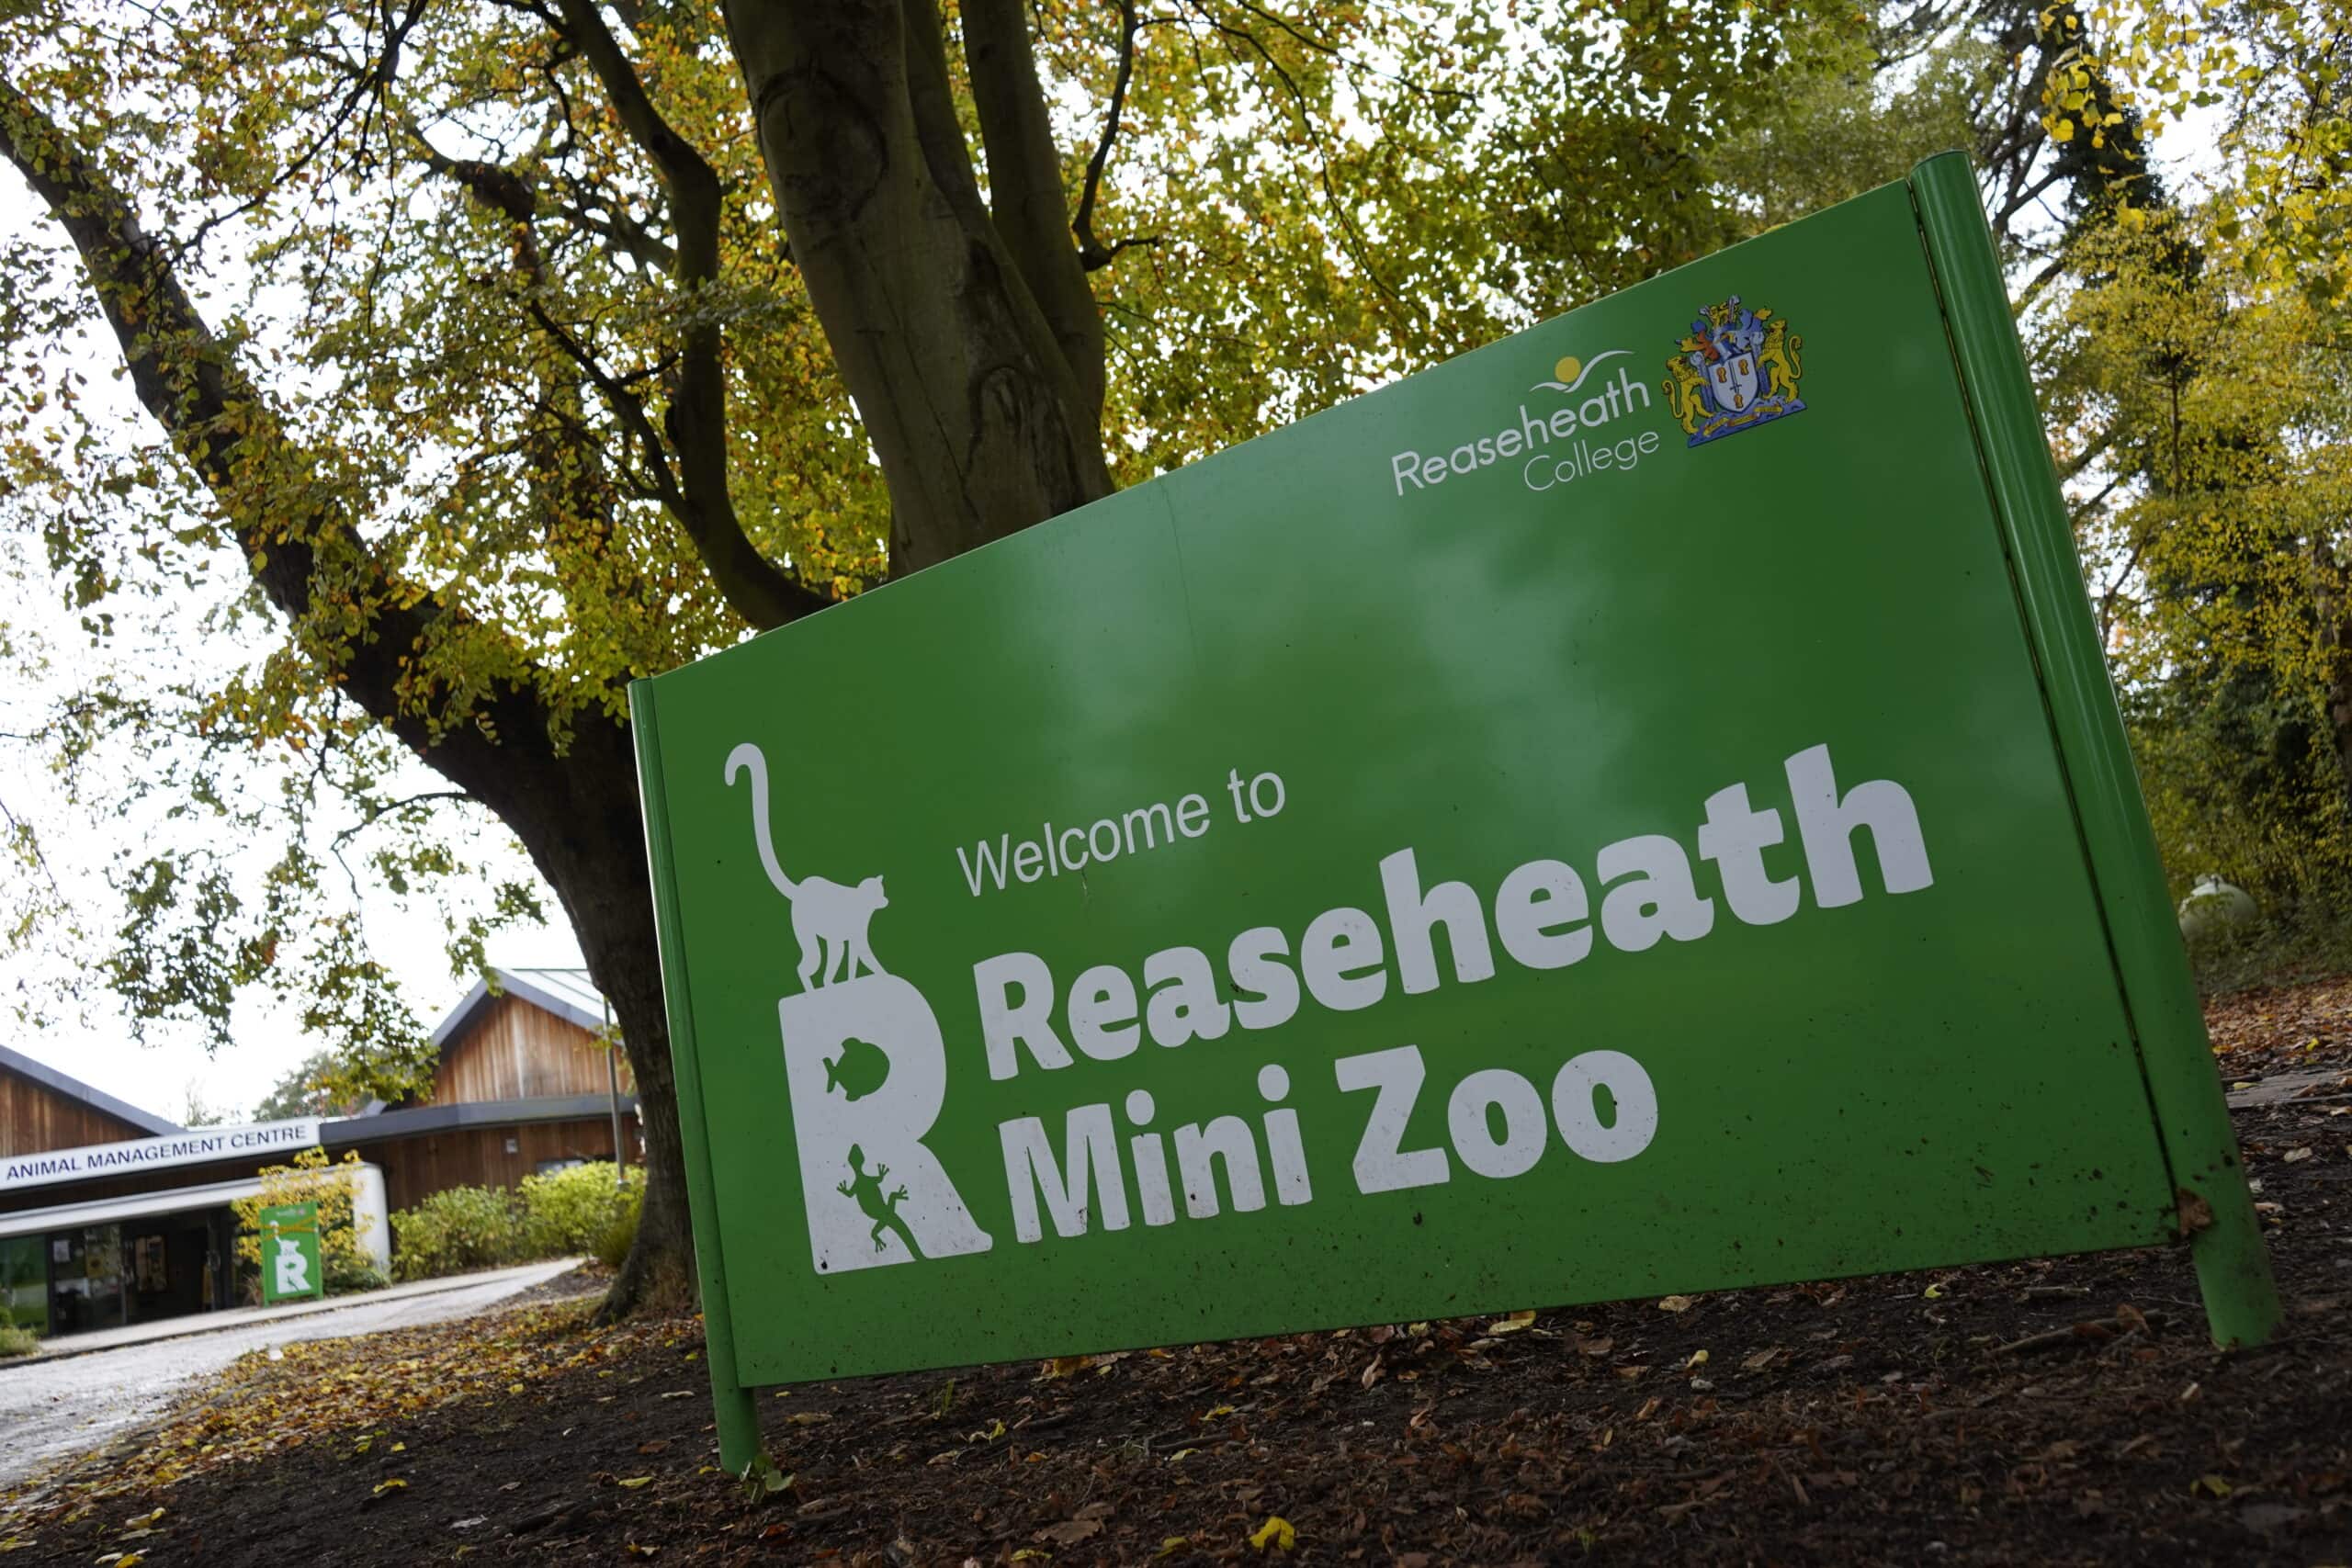 Reaseheath Mini Zoo